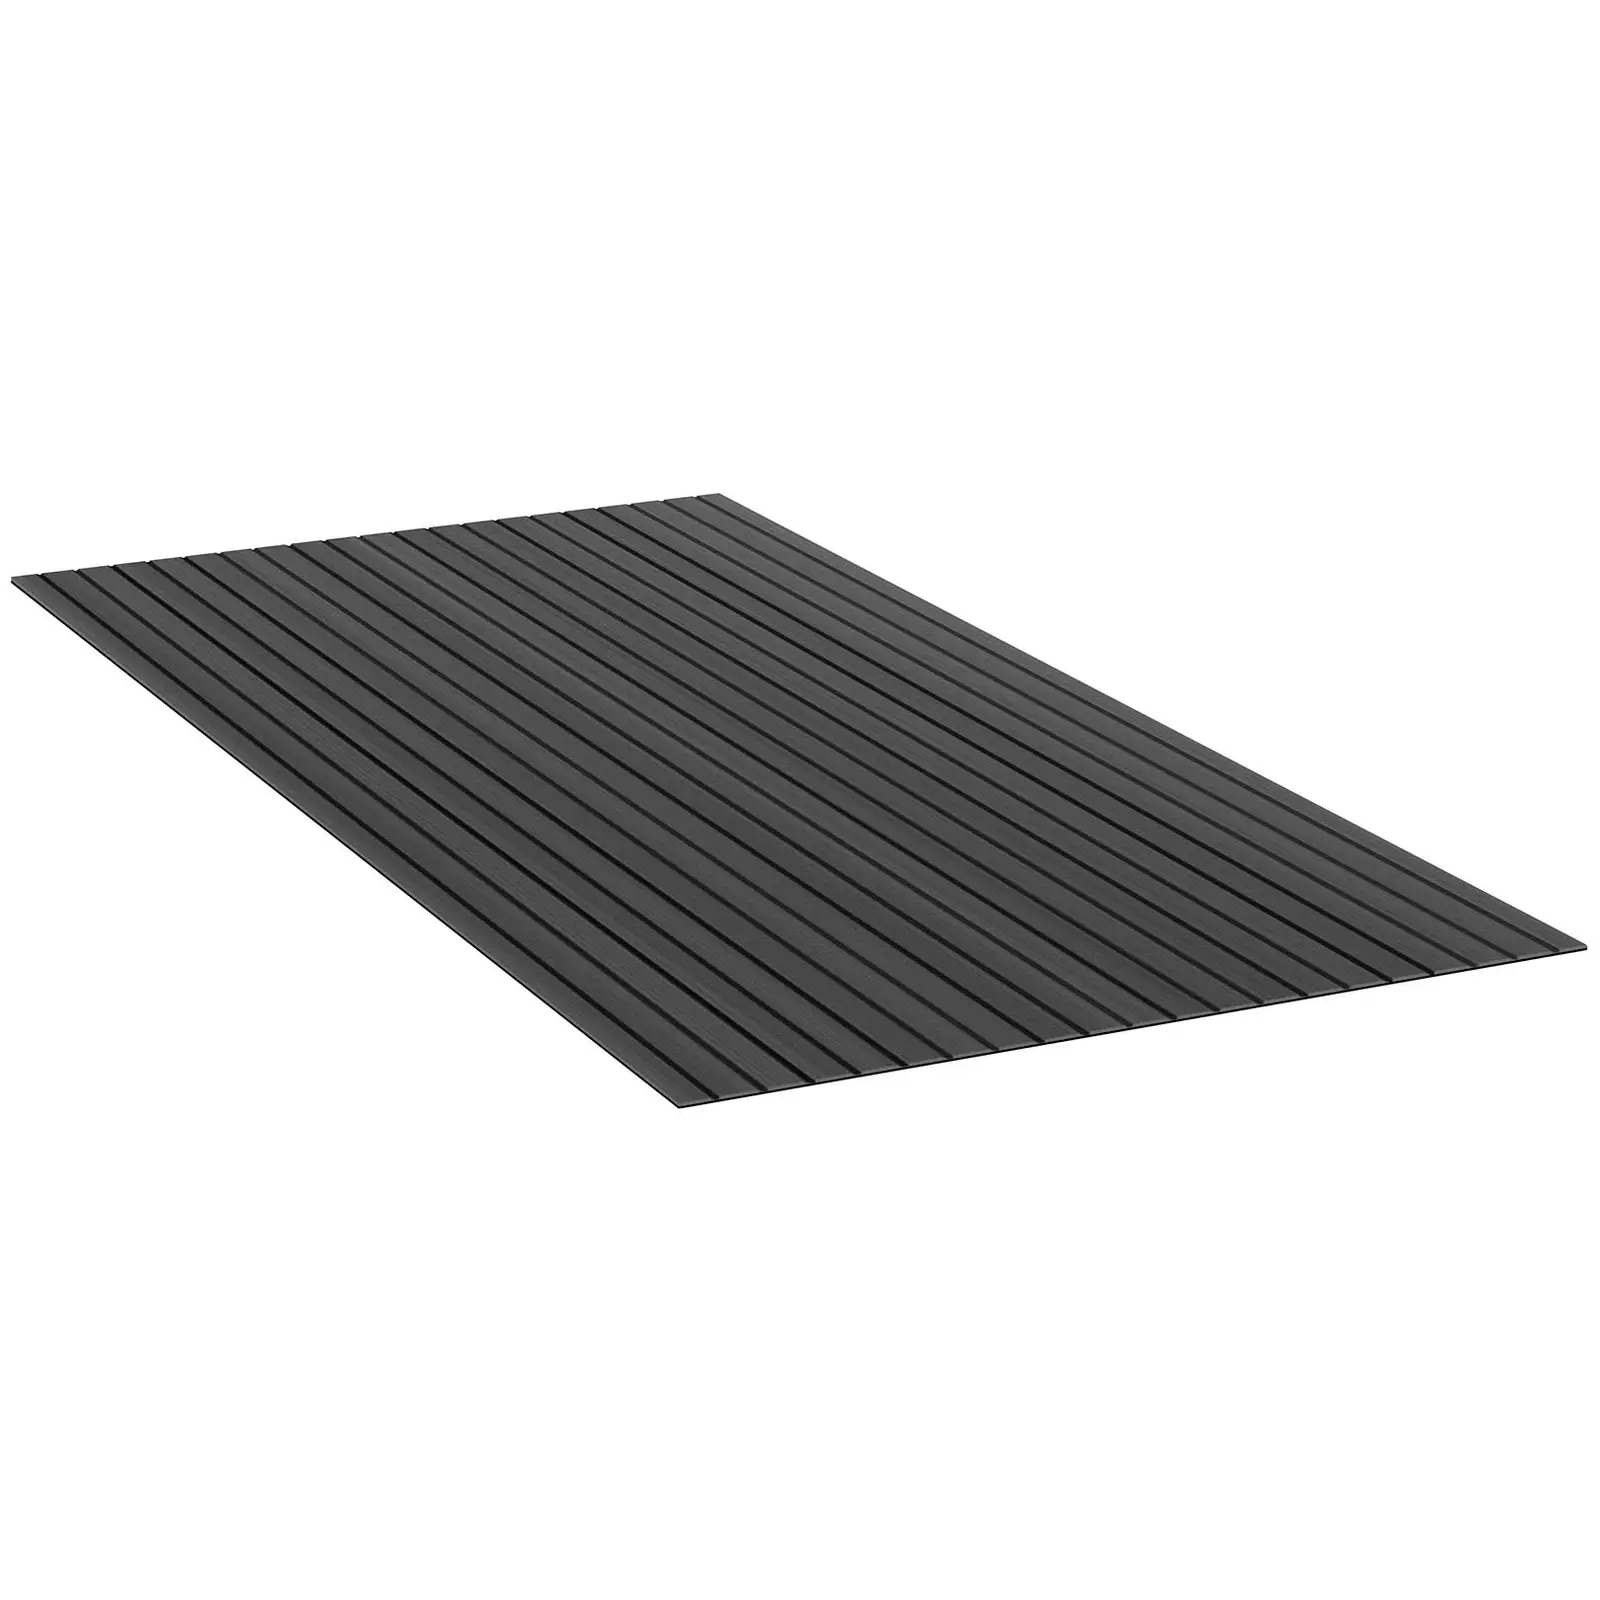 Rivestimento per pavimento barche - 240 x 120 cm - Antracite, nero